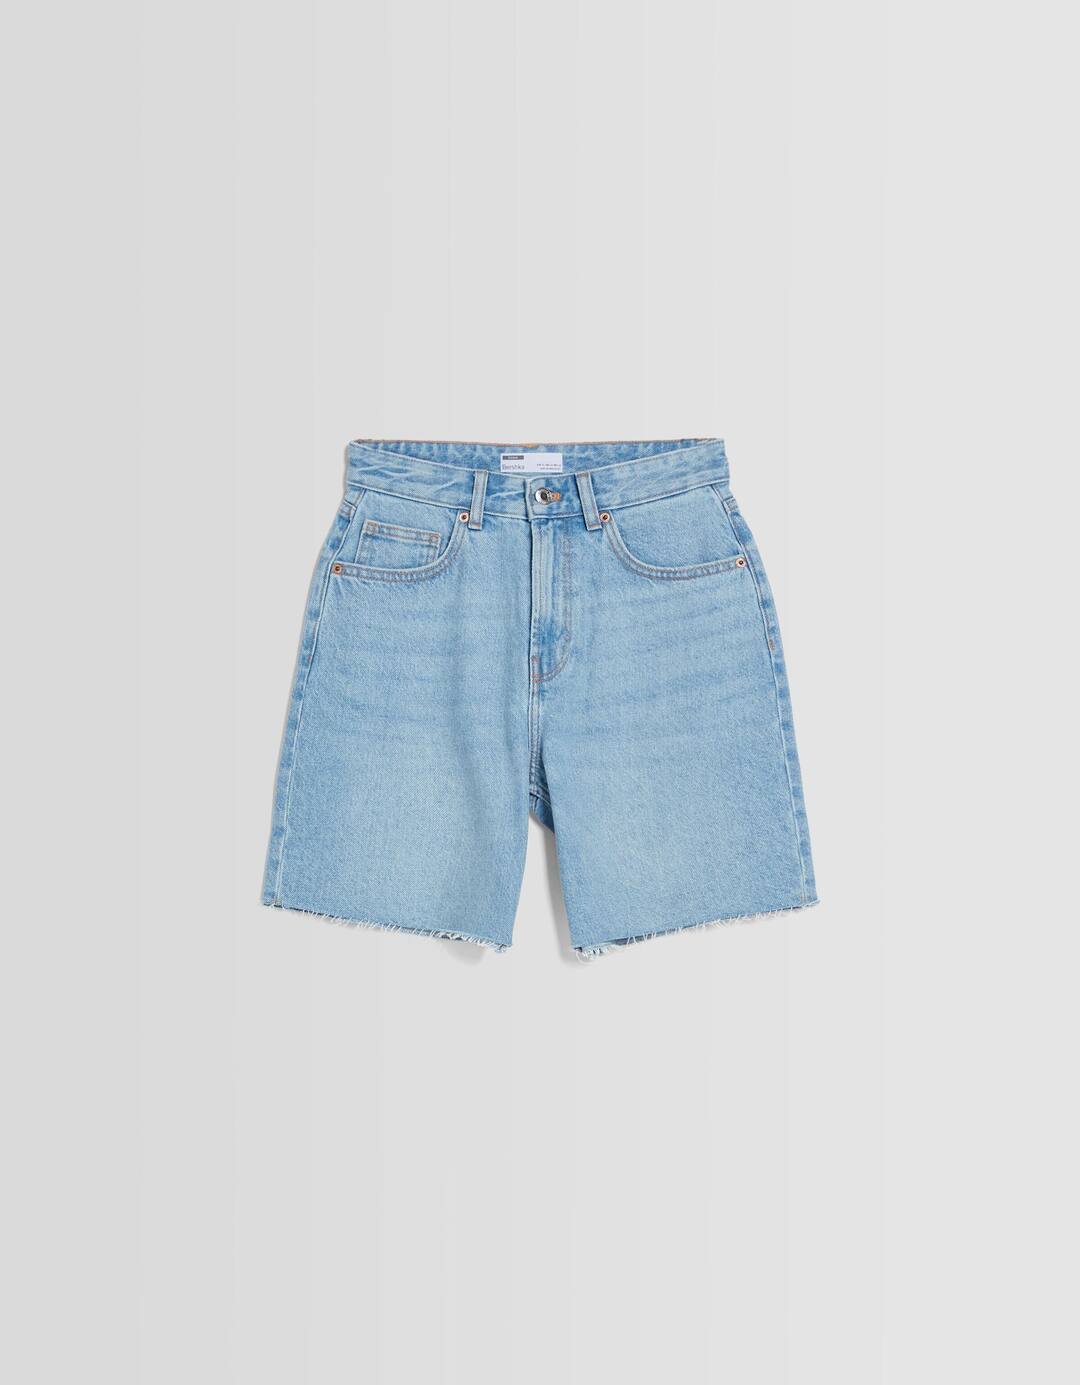 Vintage denim Bermuda shorts